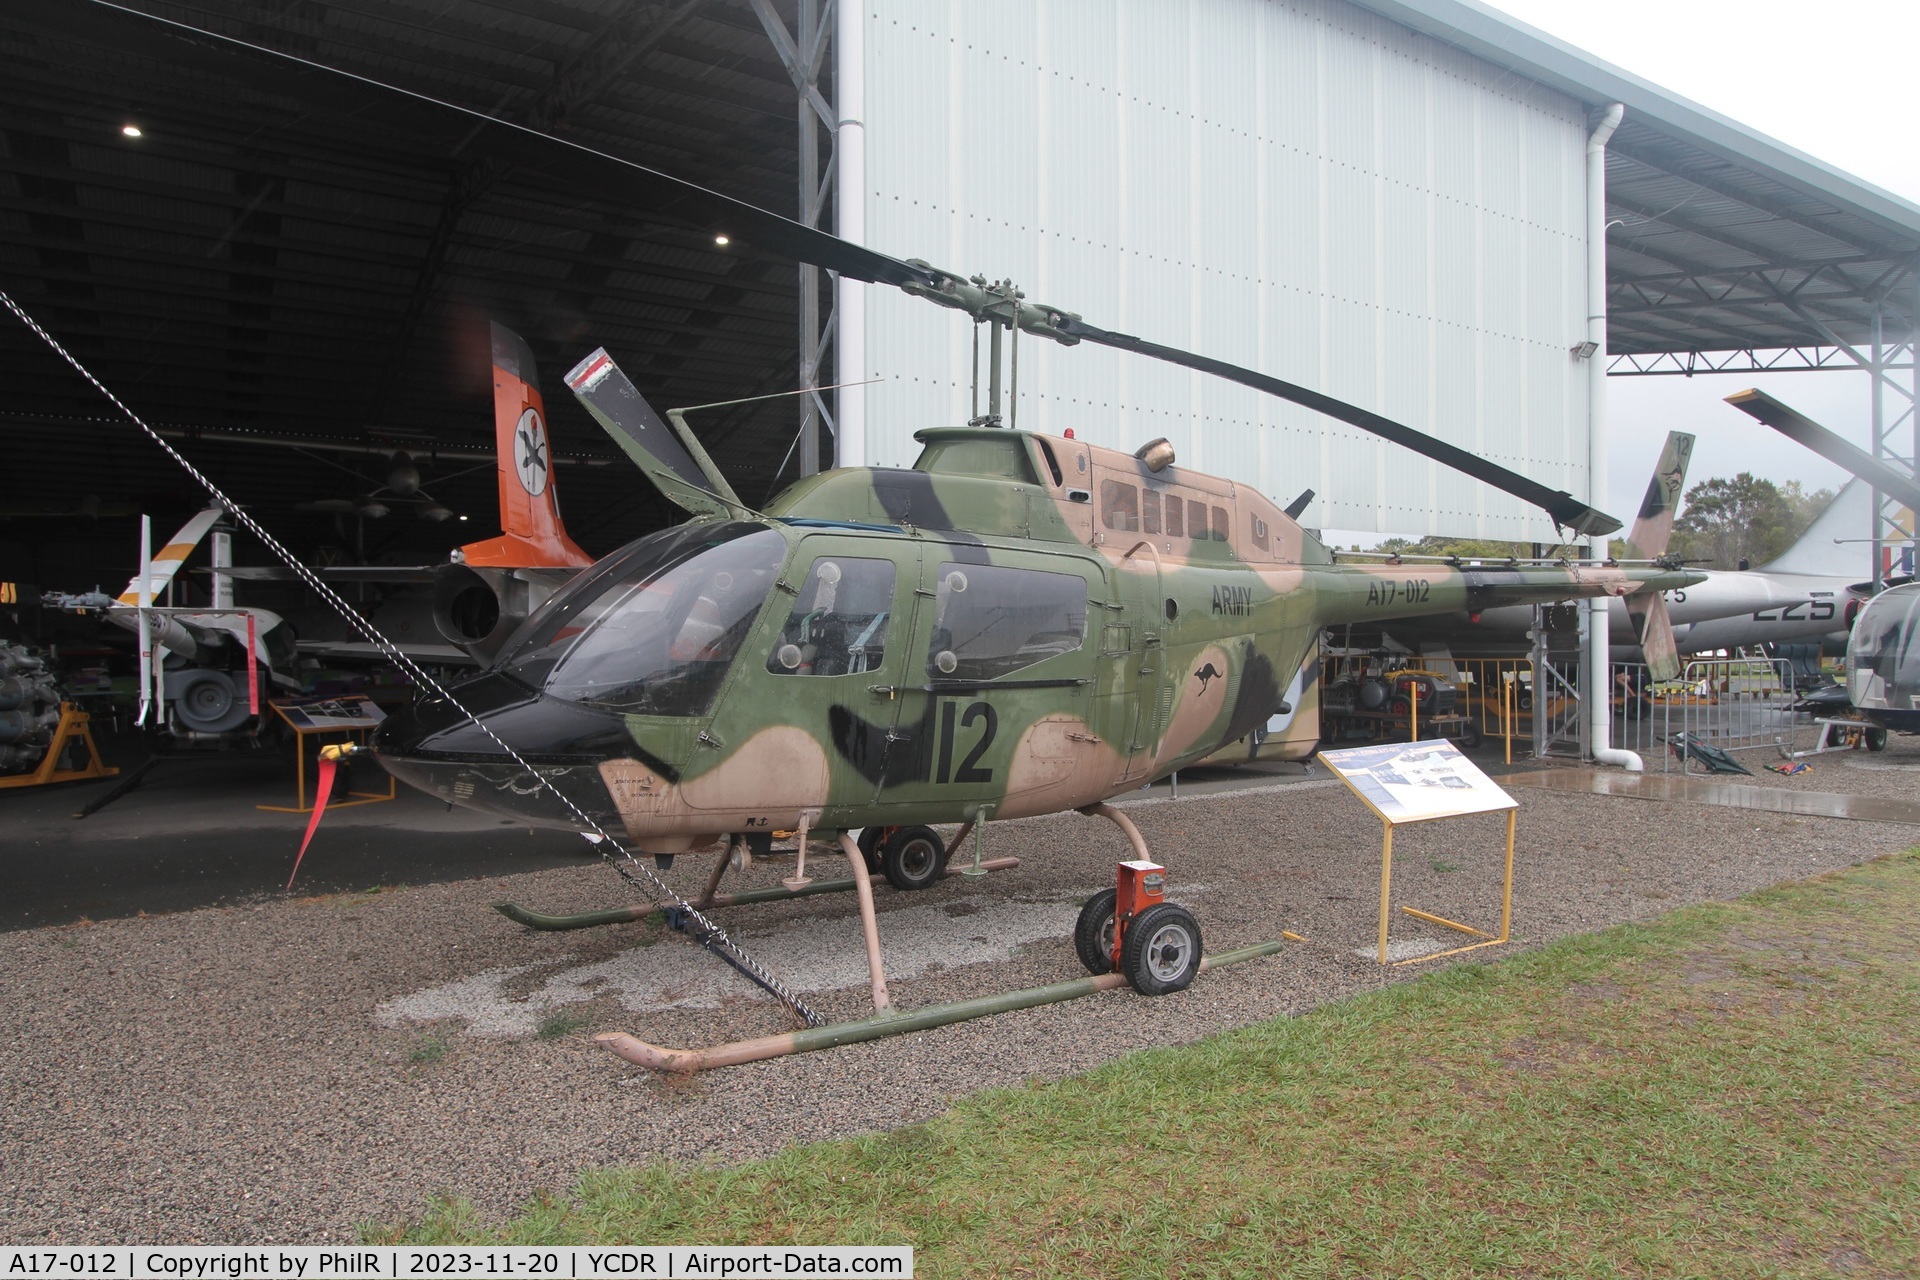 A17-012, Commonwealth CA-32 Kiowa C/N 44512, A17-012 1971 Bell 206B-1 Kiowa QAM Caloundra